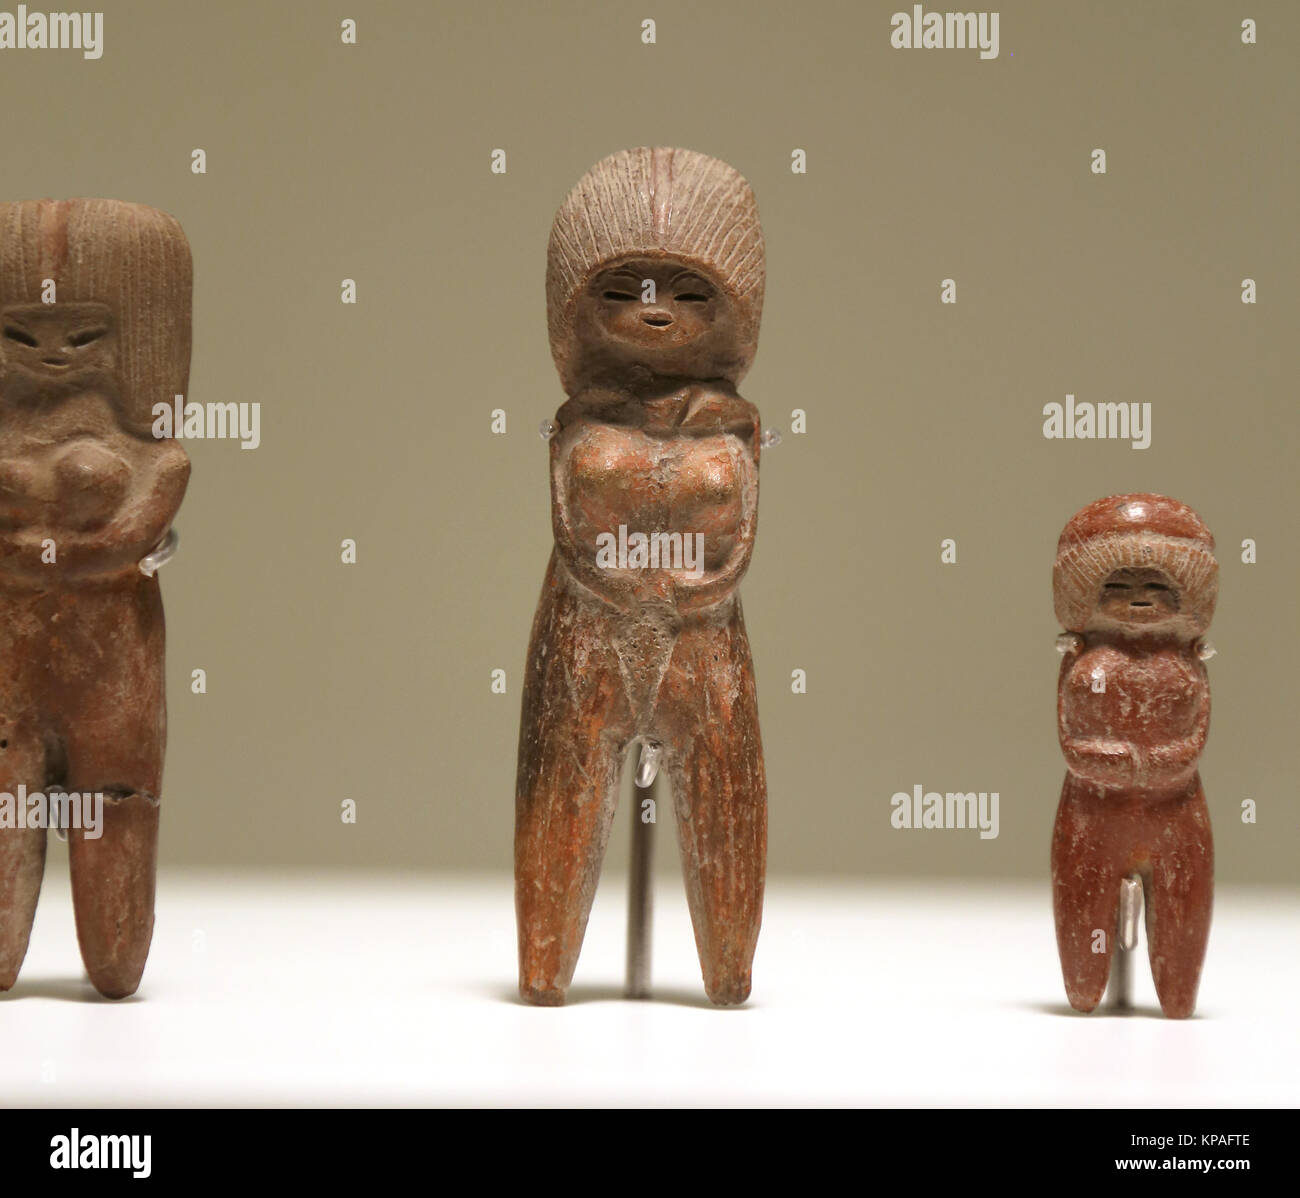 Era Pre-Inca. Cultura Valdivia. Ecuador 3500-1800 BC. Cerámica de figurillas femeninas. Museo de Culturas del Mundo. España Foto de stock